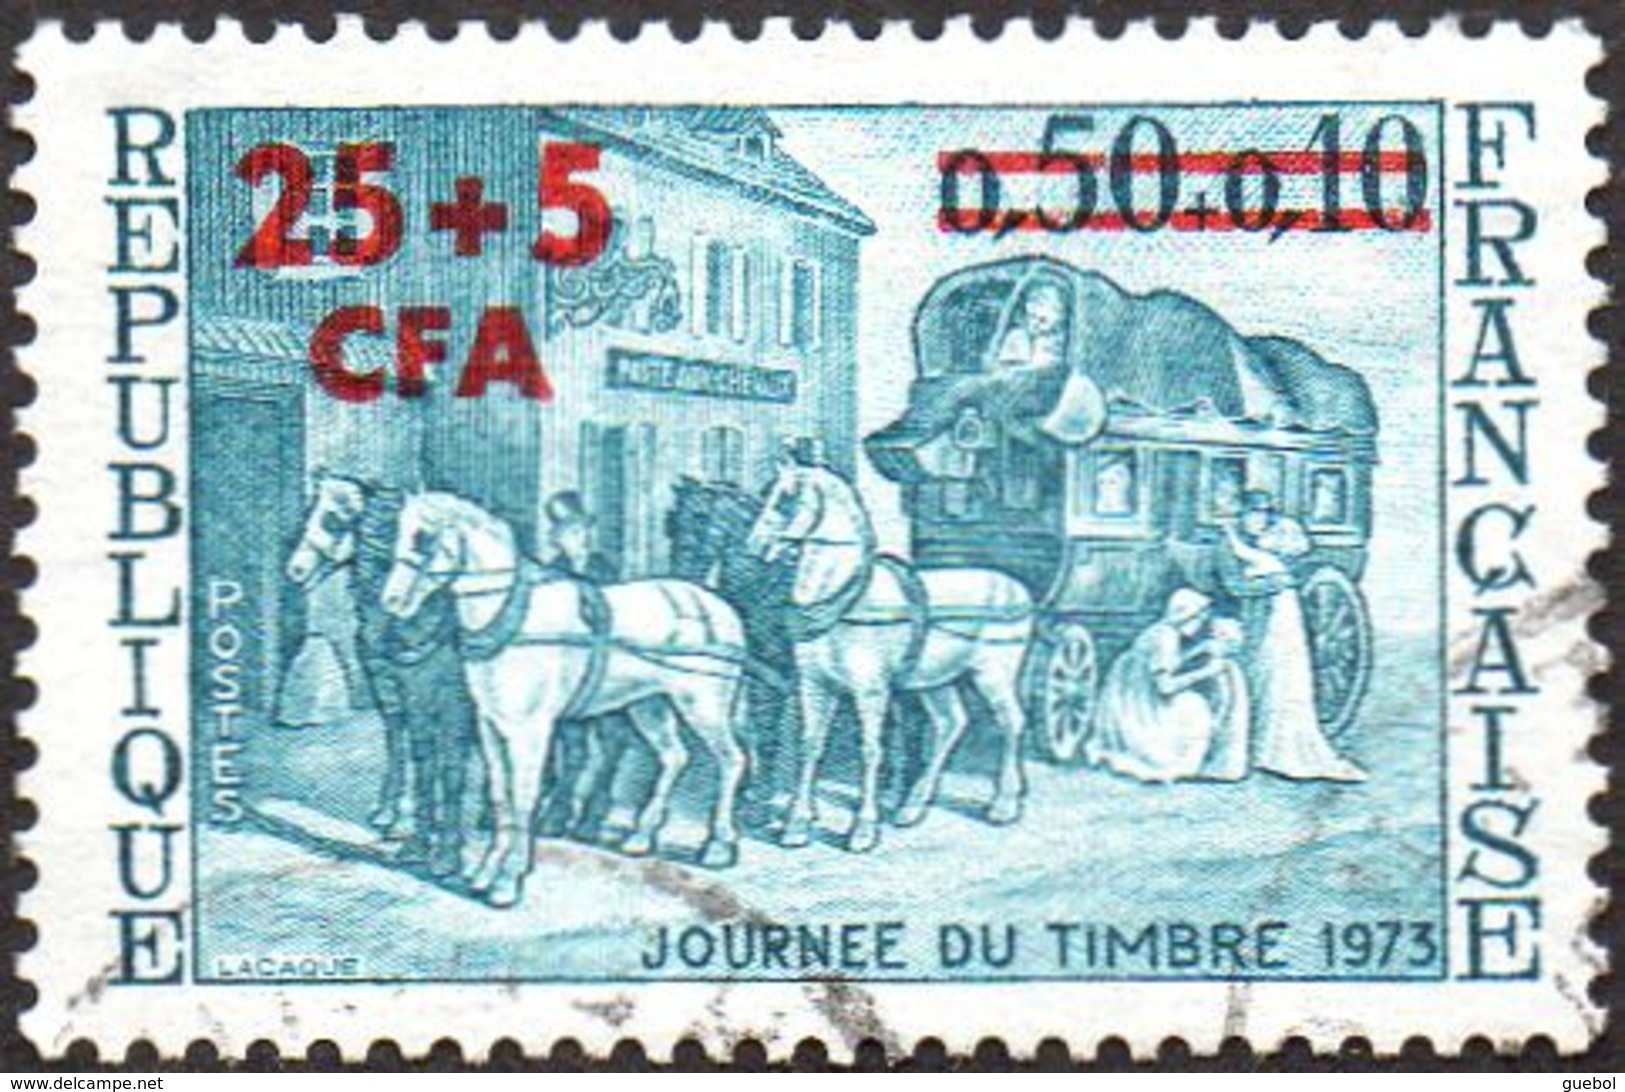 Réunion Obl. N° 414 - Journée Du Timbre 1973 - Relais De Poste - Malle, Cheveaux - Oblitérés